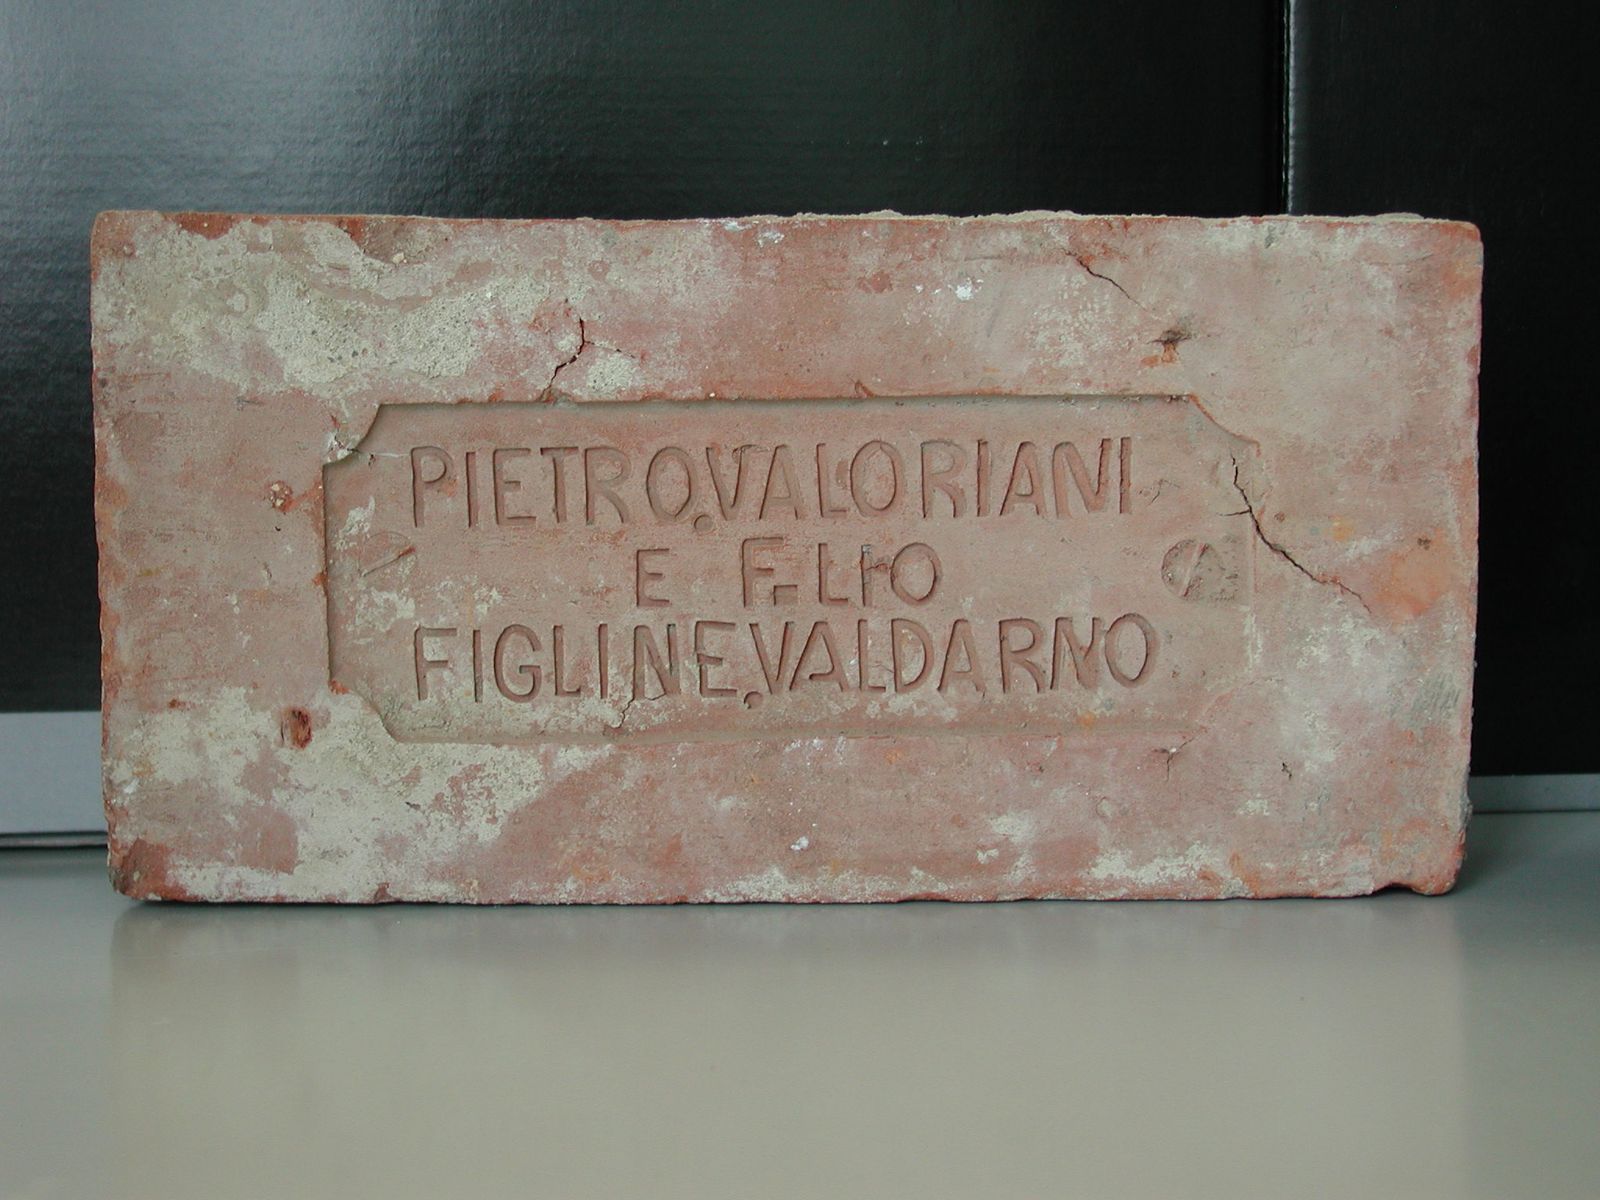 Brick from the Valoriani family factory in Tuscany